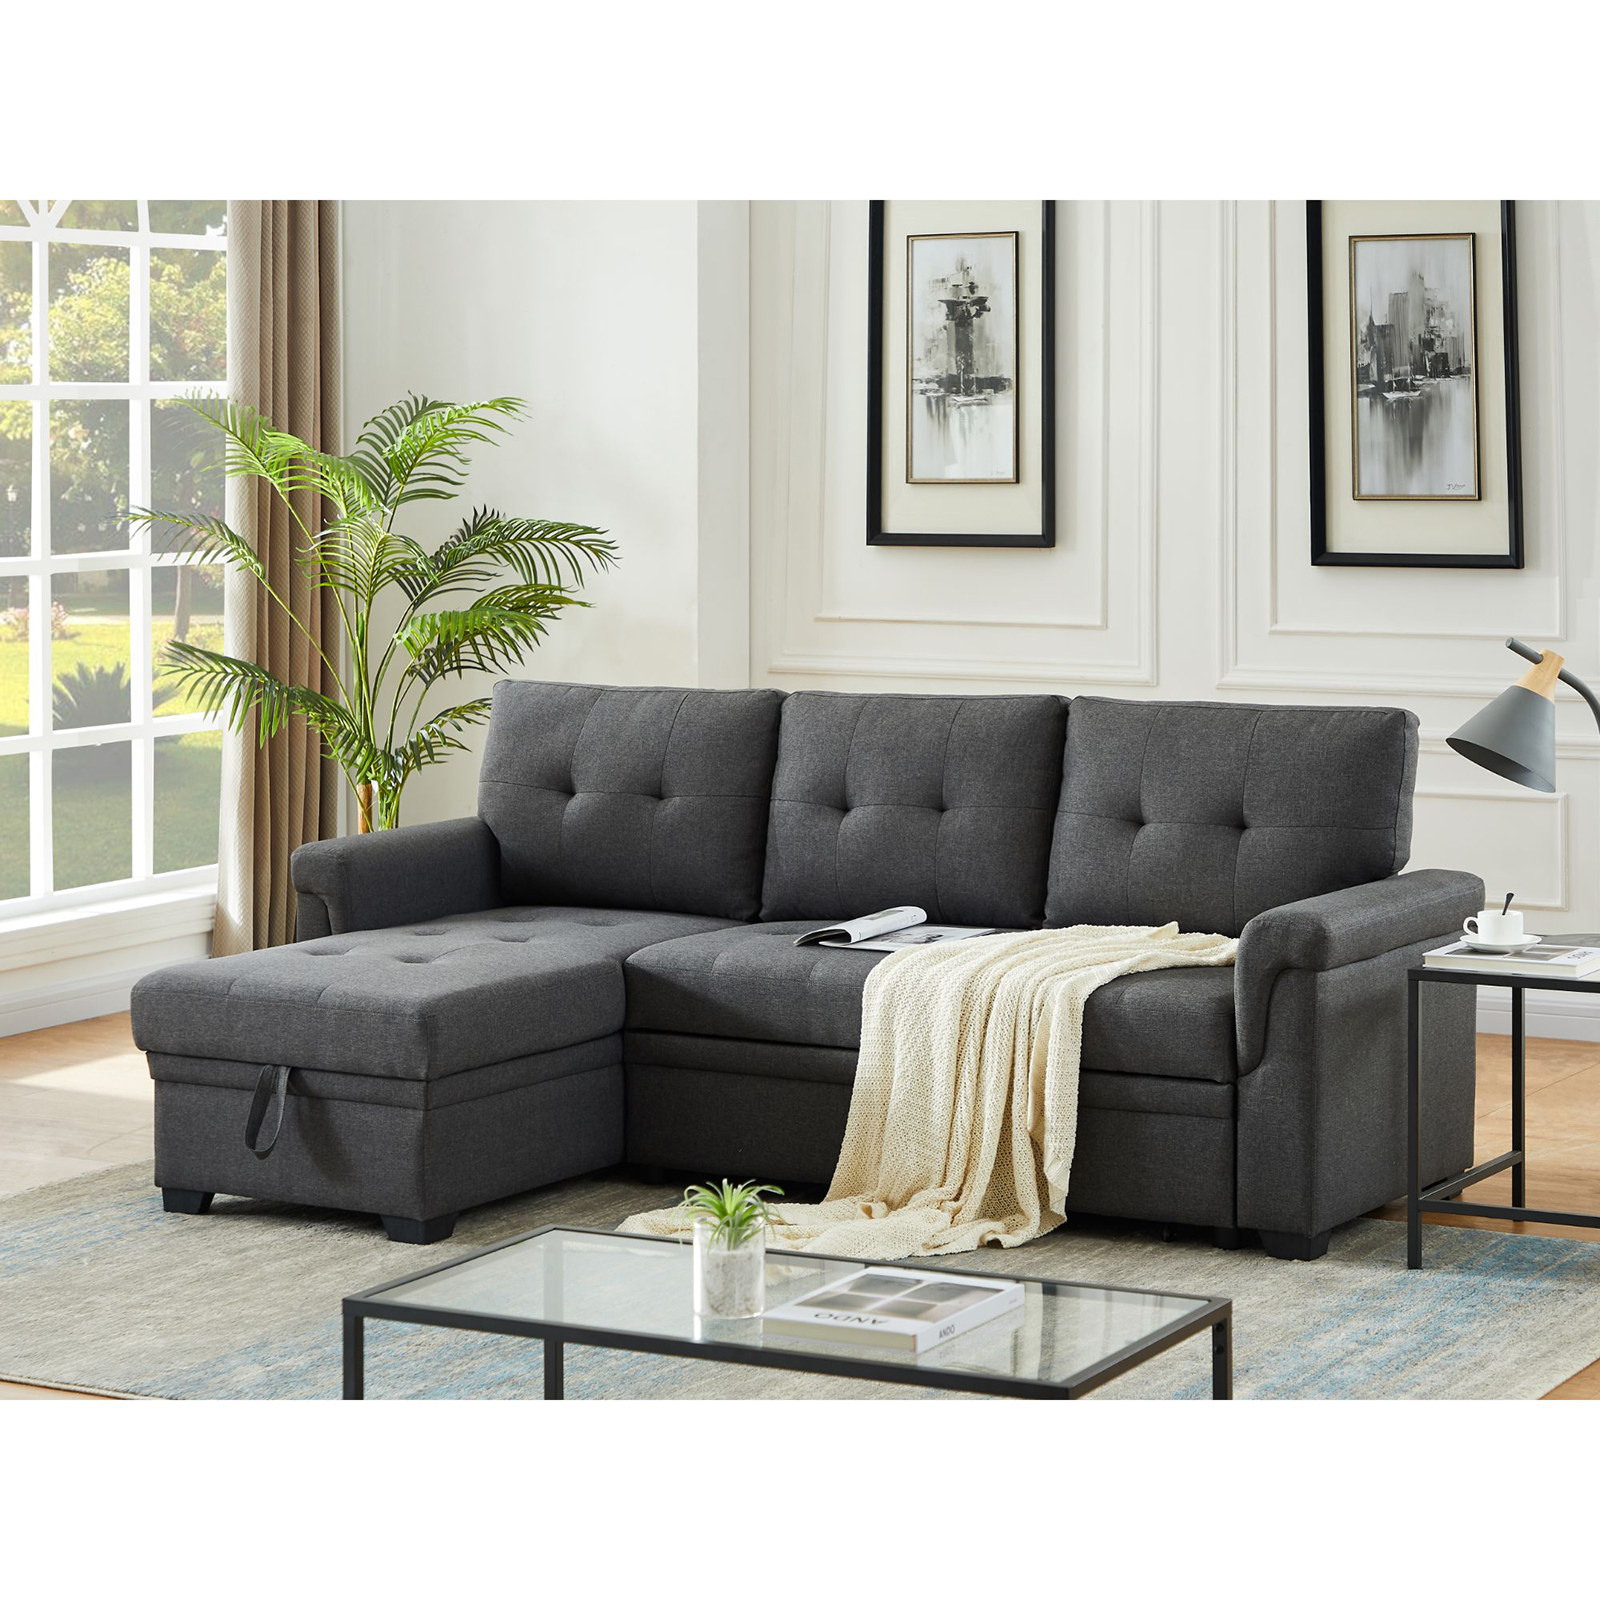 Sofa Sleepers From Sears Com